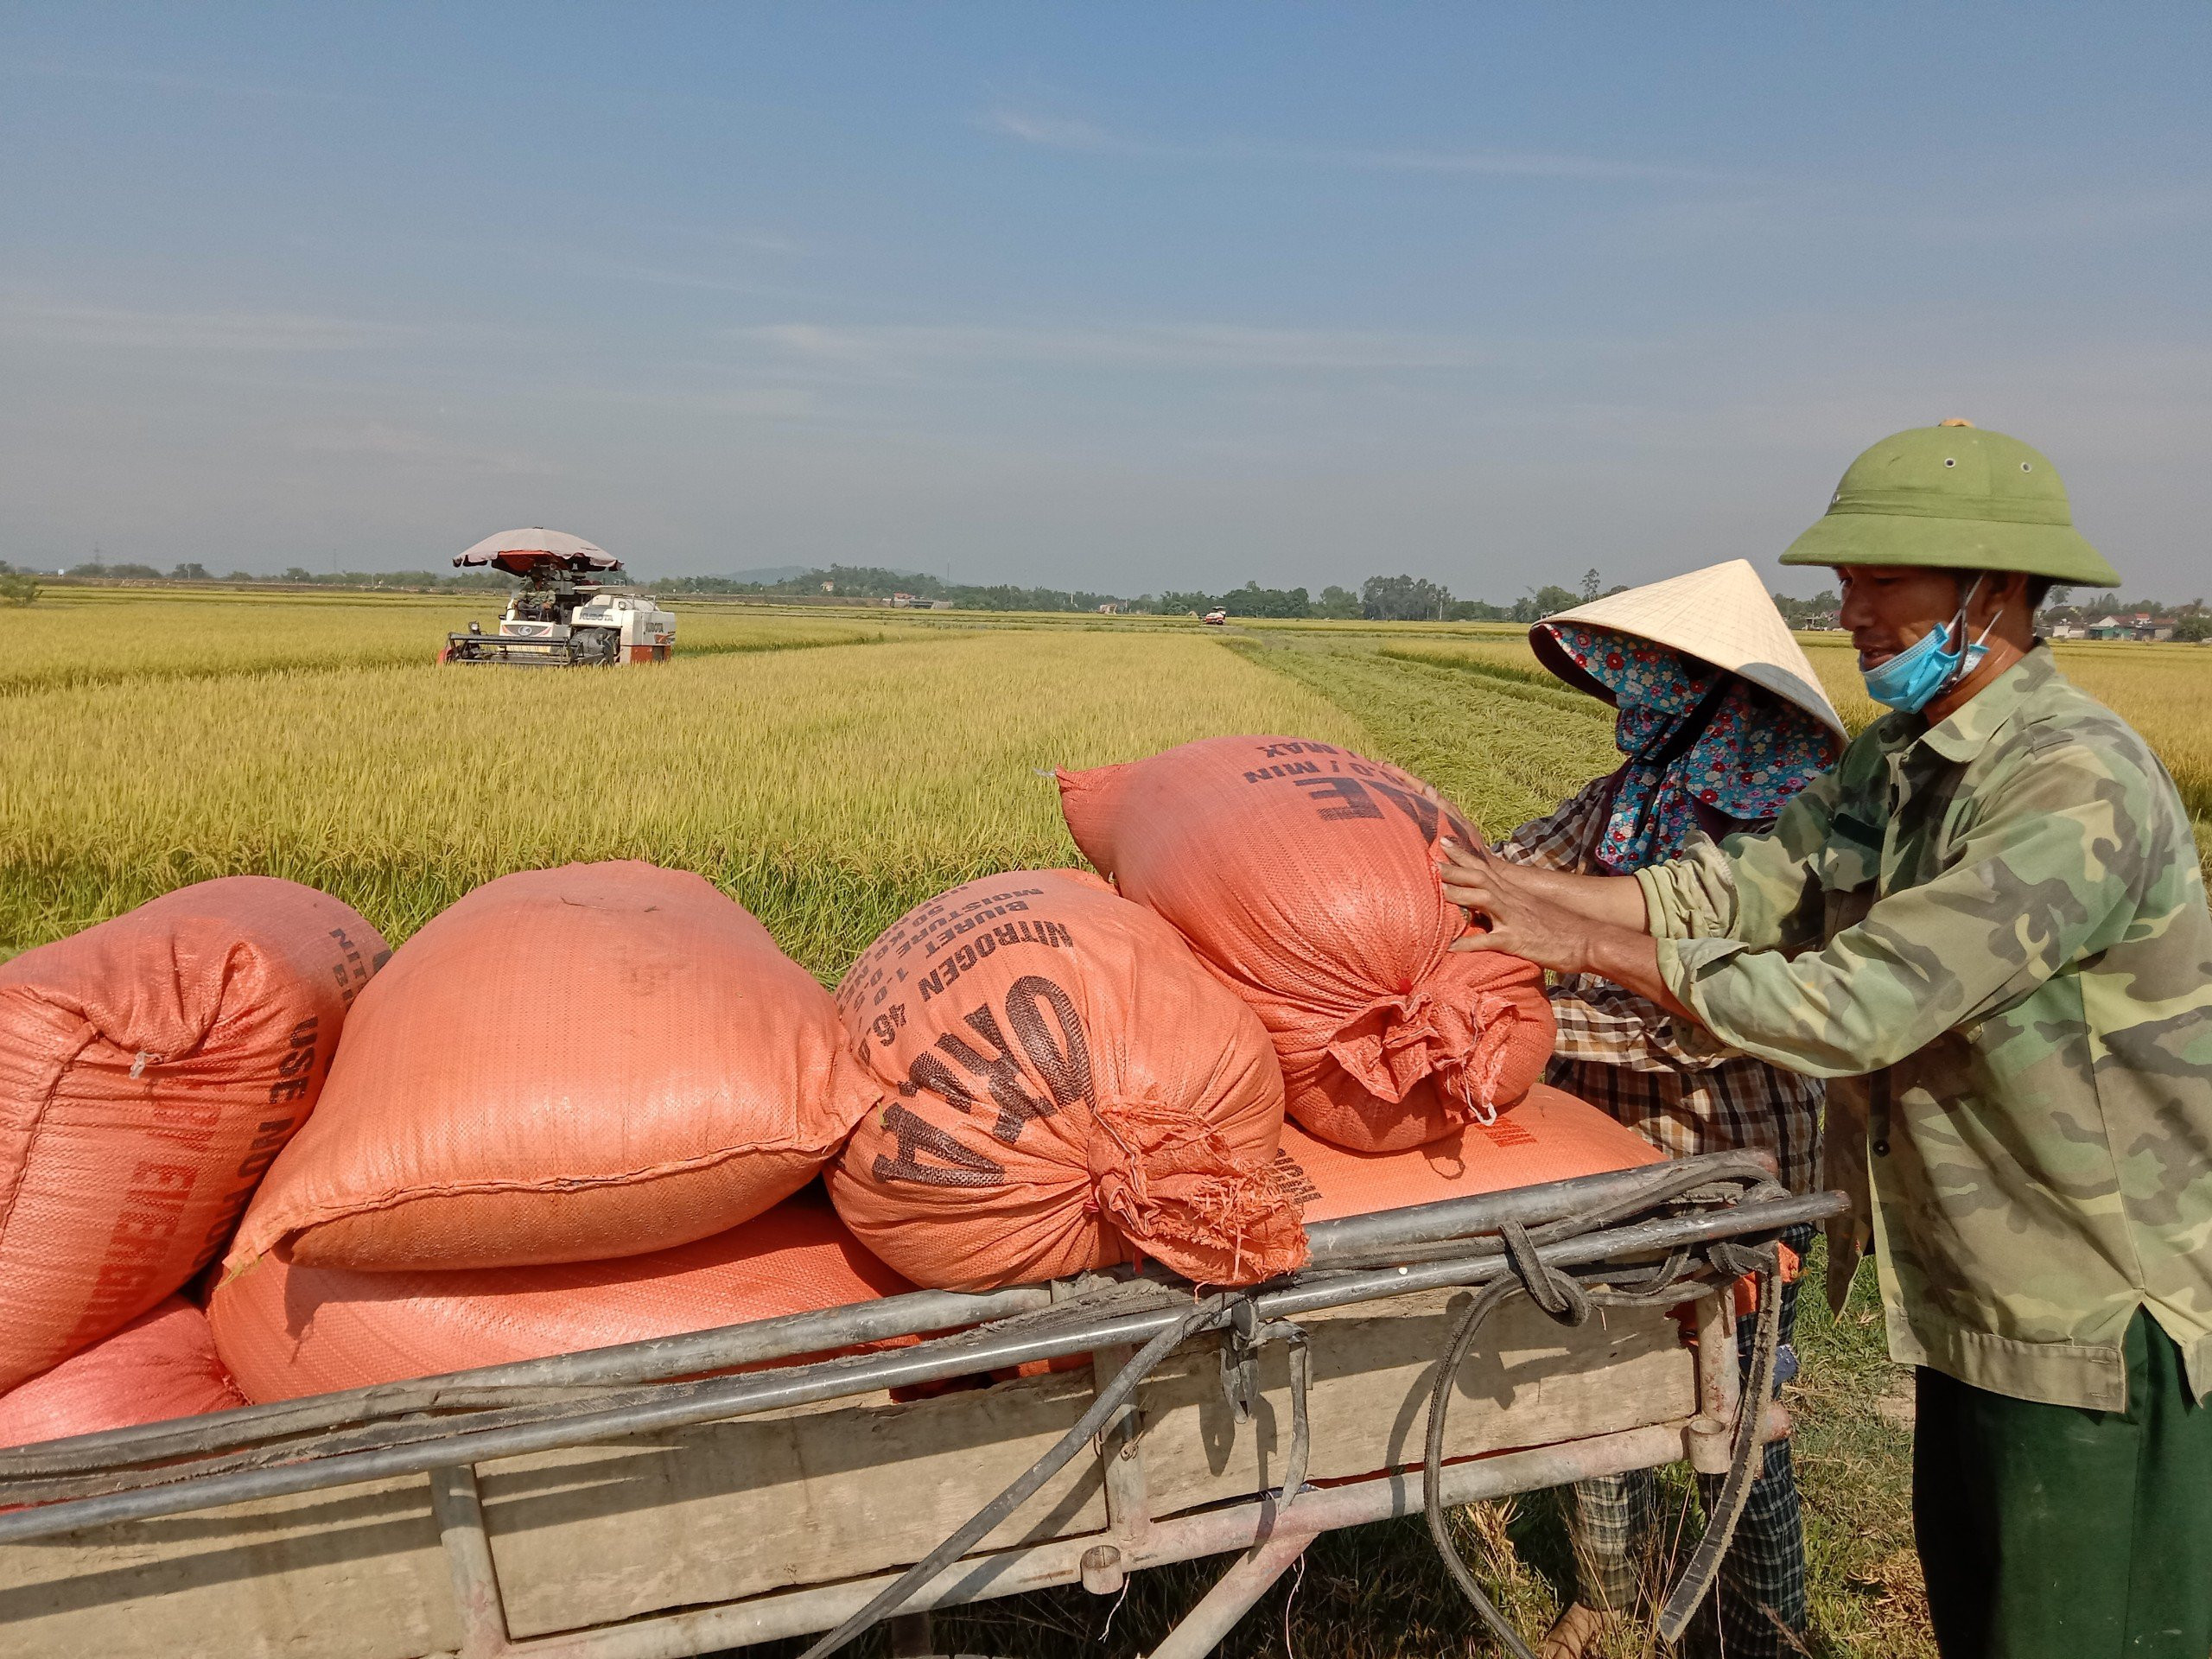 Ông Hoàng Văn Hùng, nông dân xóm 4 xã Thái Sơn- Đô Lương đang chất lúa lên xe để đưa về nhà. Ảnh Ngọc Phương